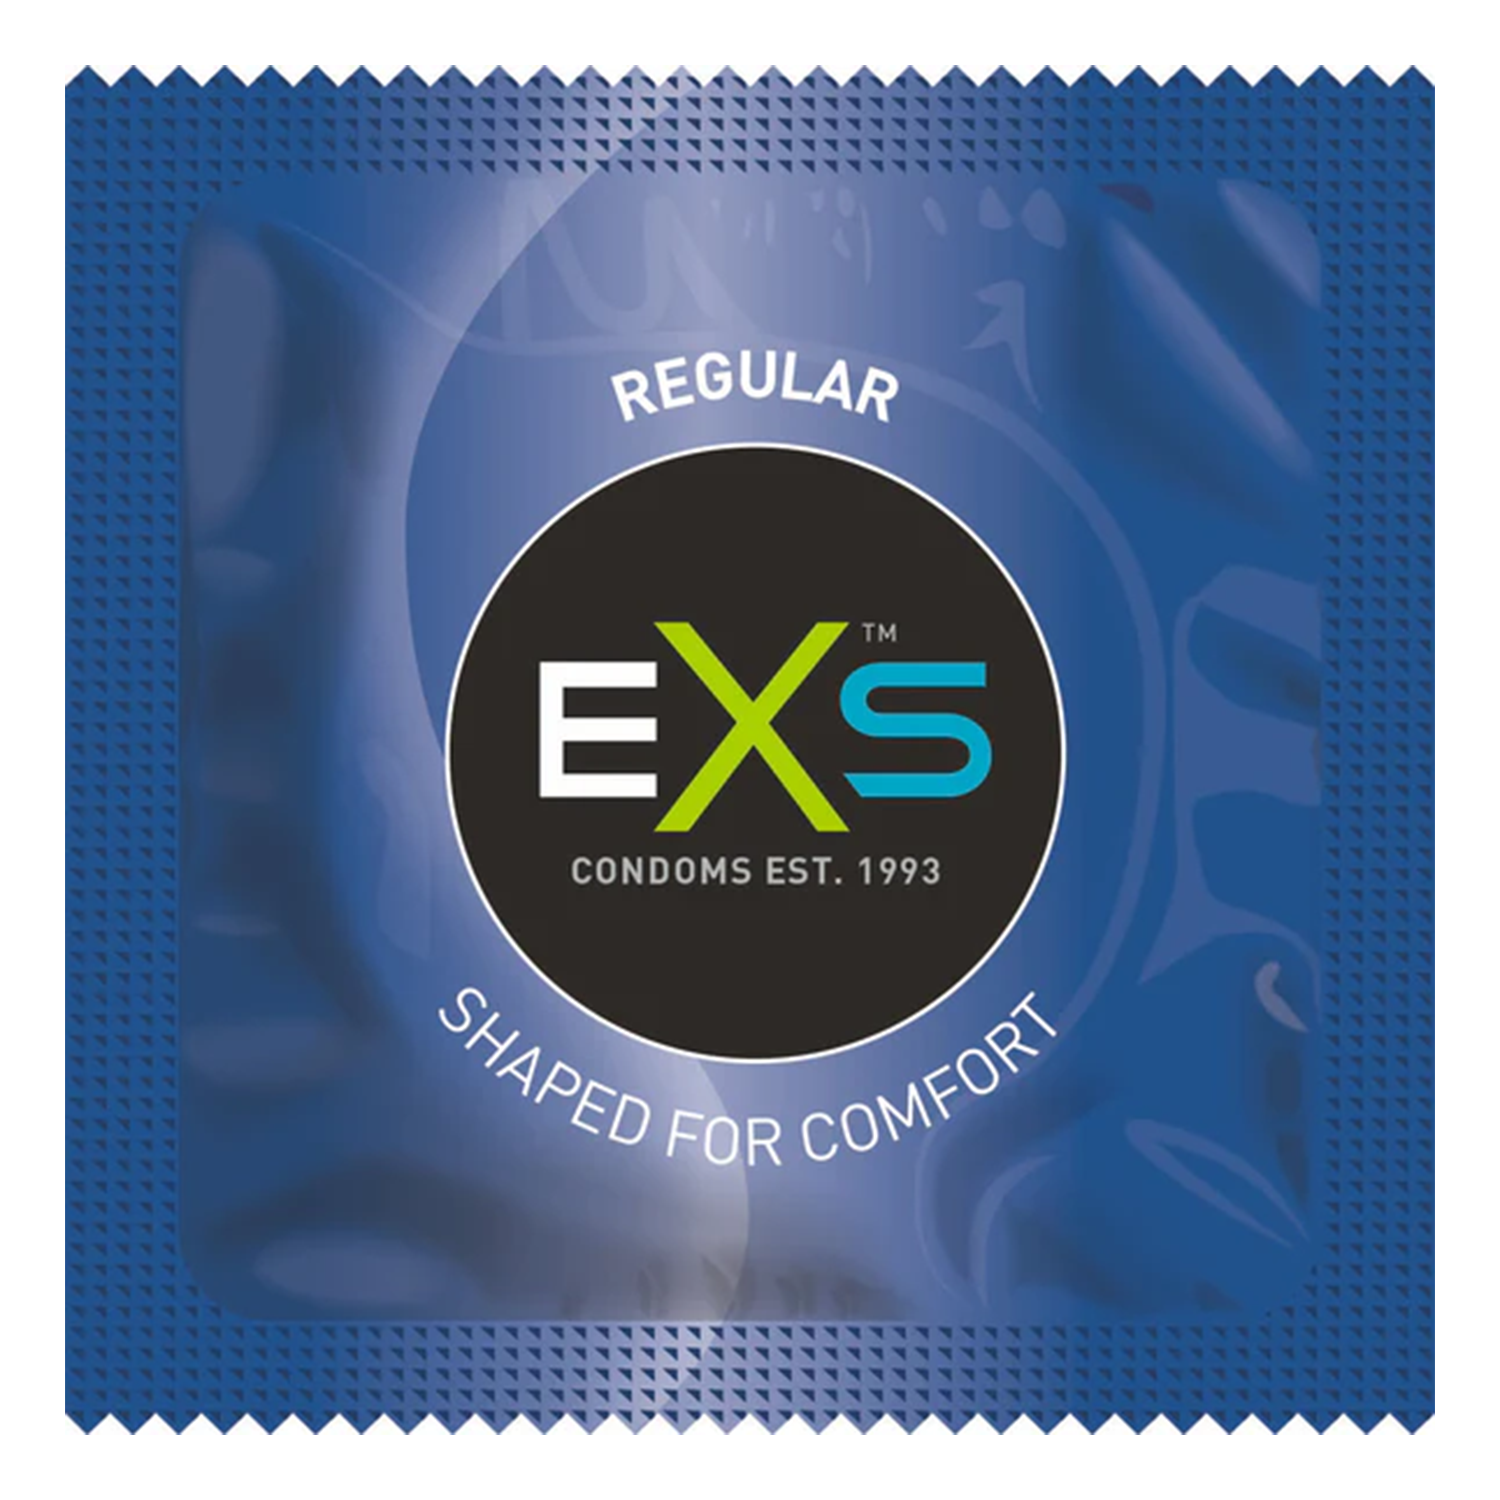 EXS Condoms | Regular | Pack of 144